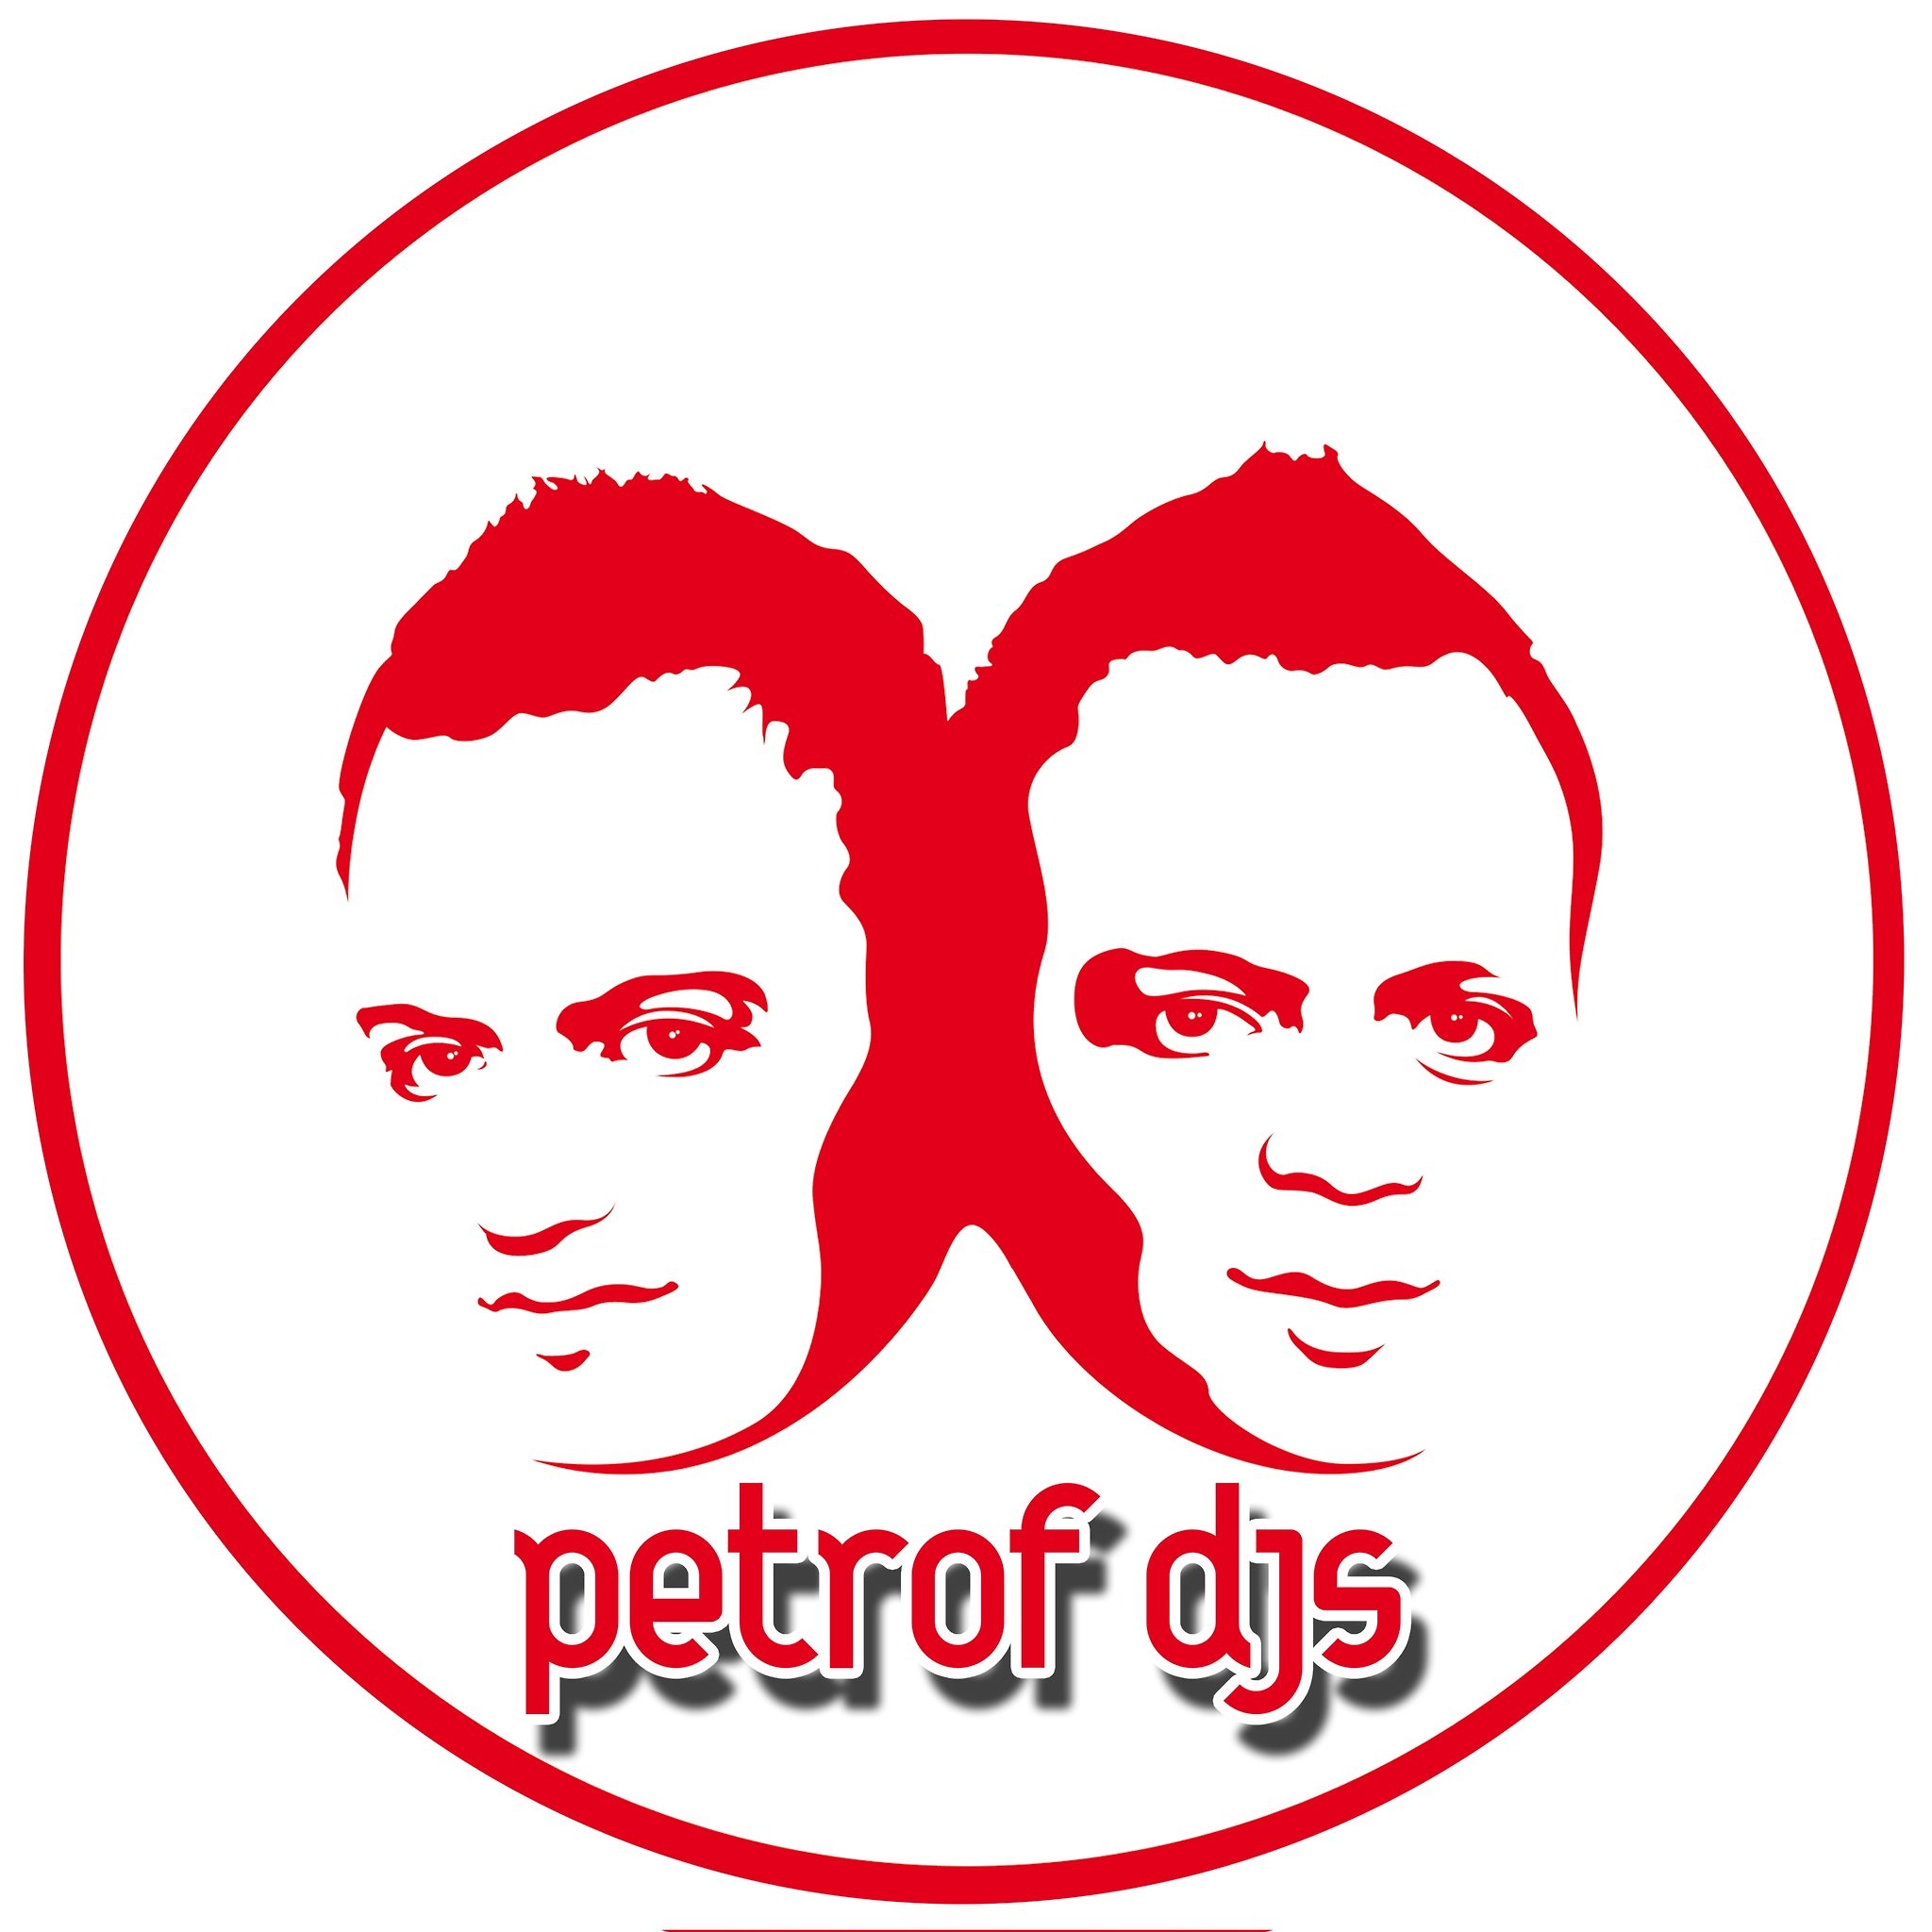 Petrof Djs (Братья Петровы)